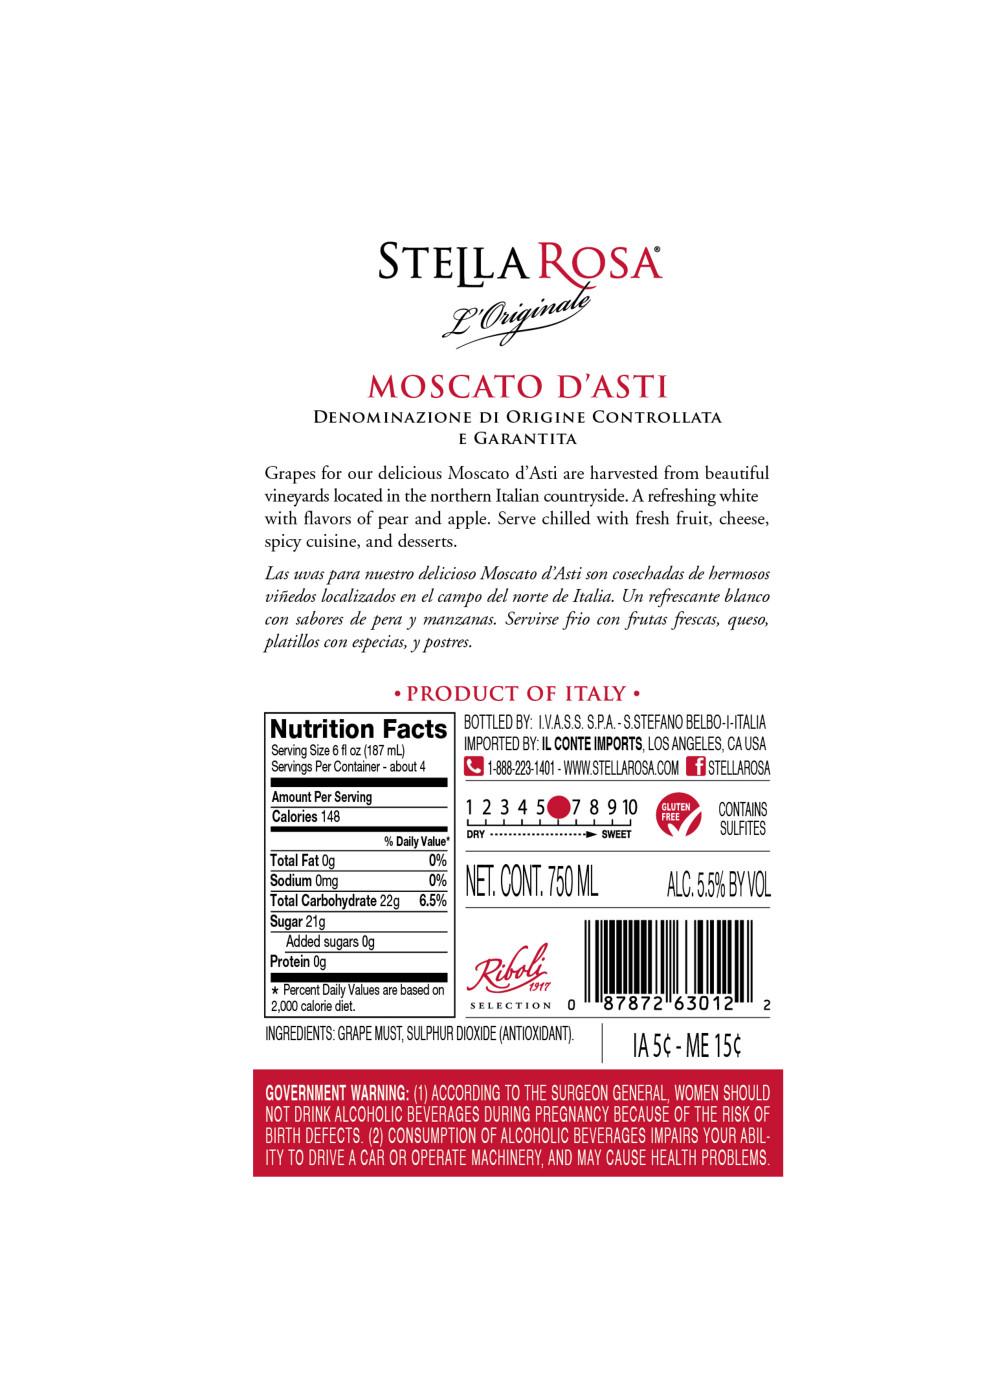 Stella Rosa Moscato D'Asti; image 6 of 6